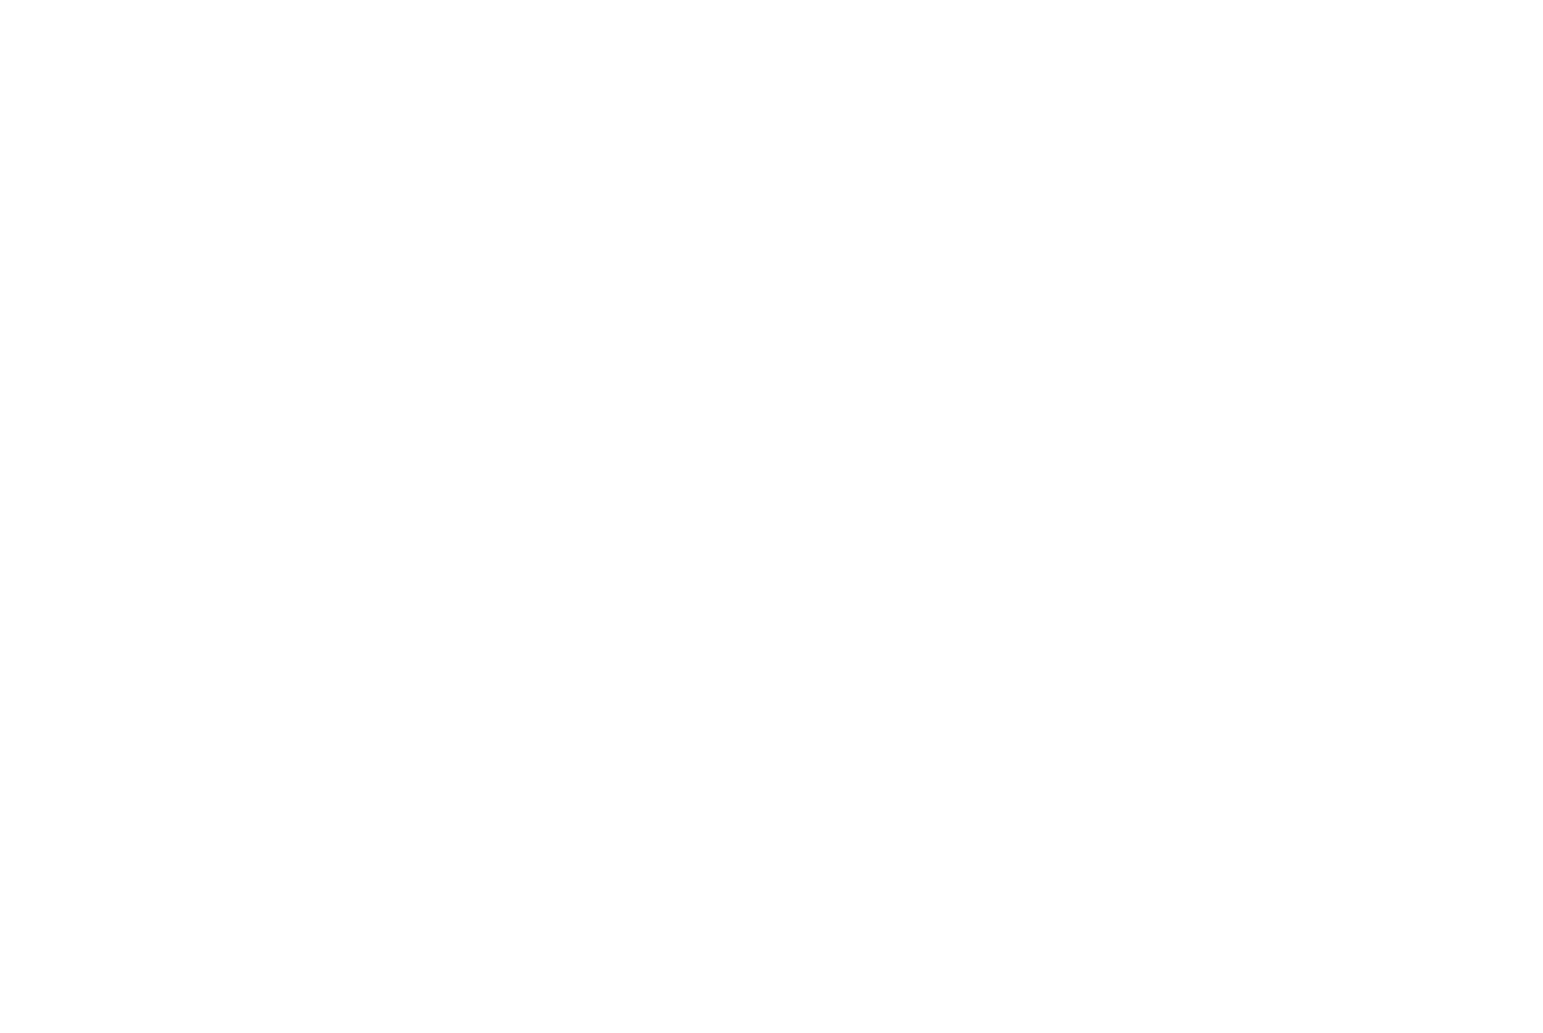 Shimizu Corporation logo for dark backgrounds (transparent PNG)